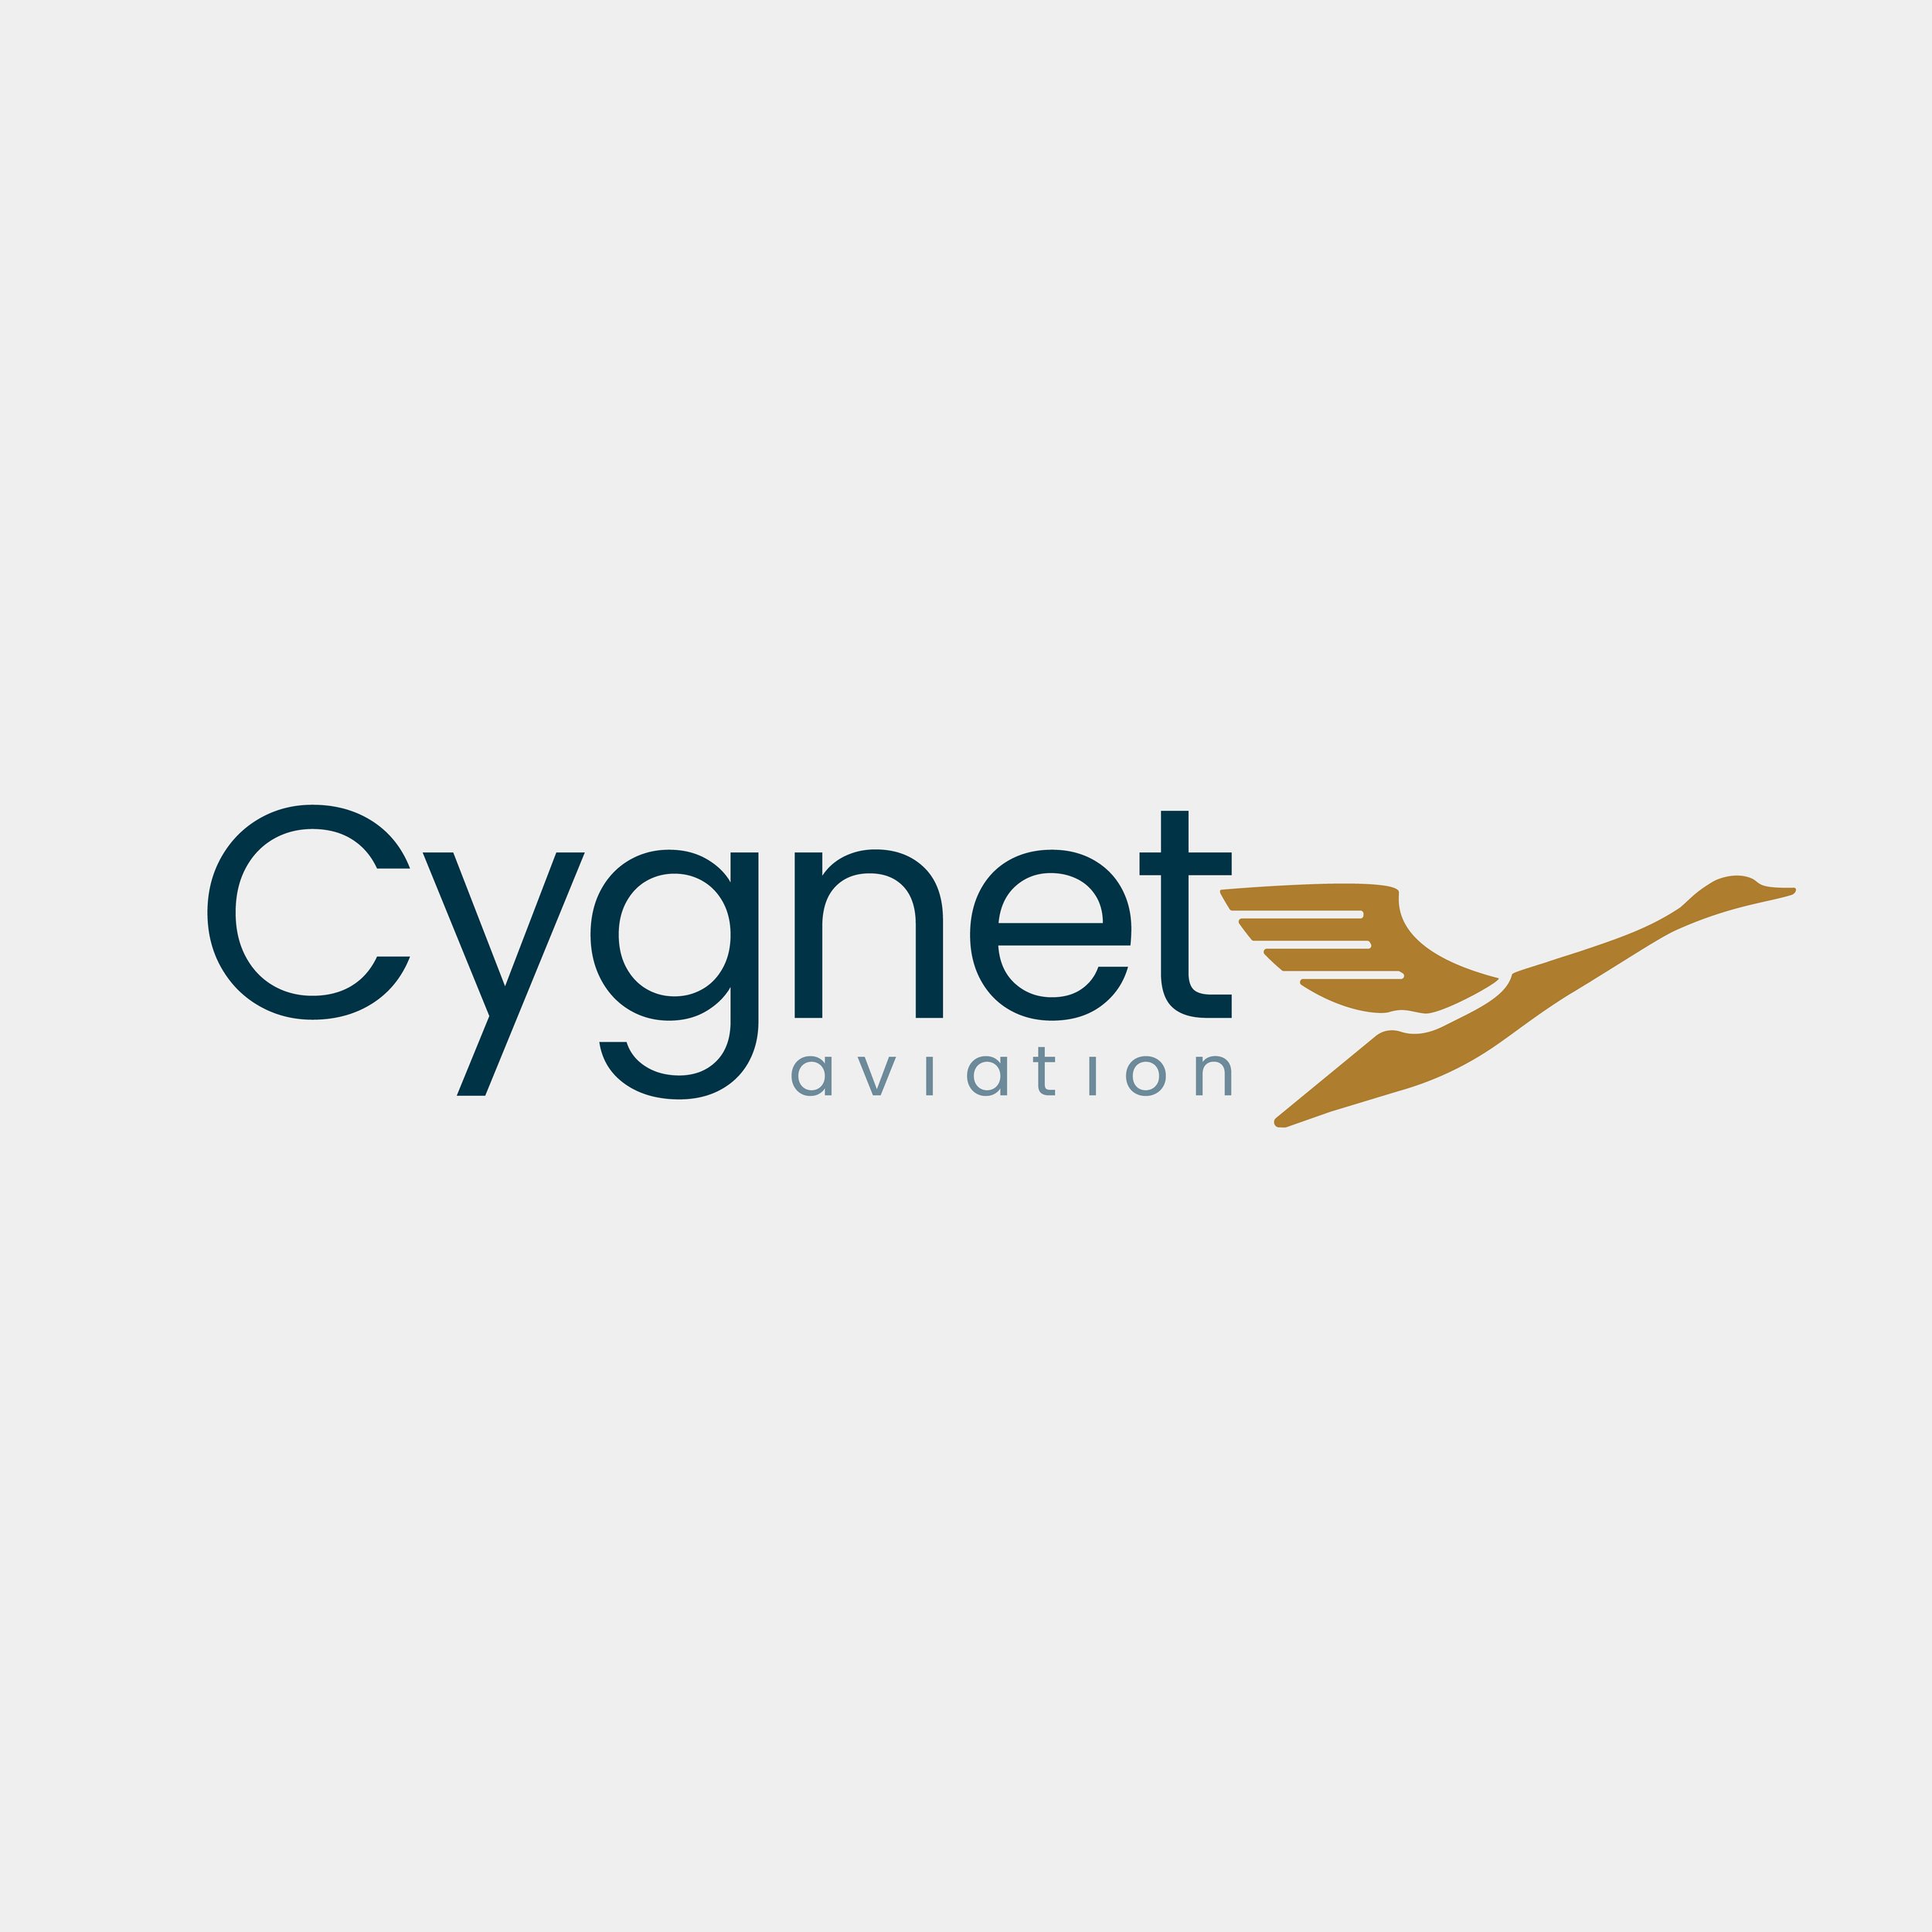 Cygnet Aviation